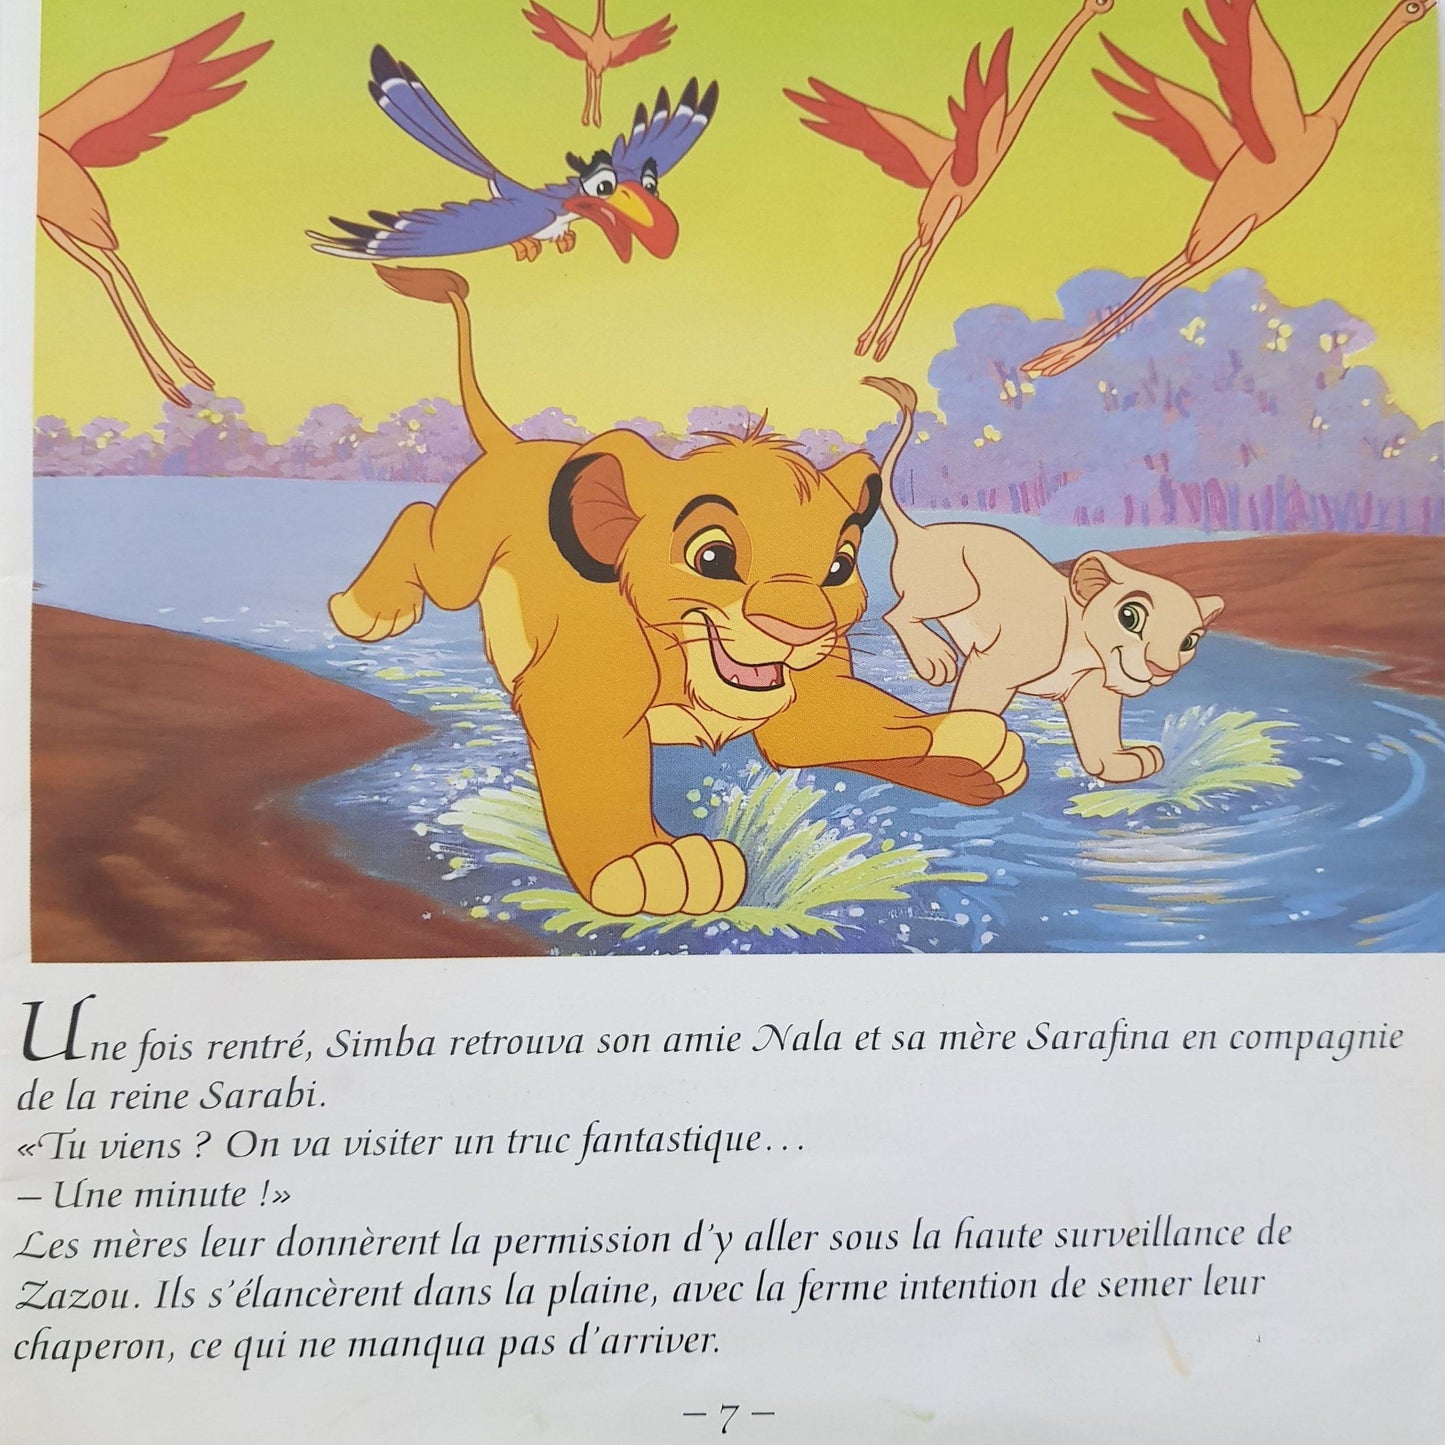 3 Livres: Le Roi Lion II l'honneur-de-la-tribu, Robin Des Bois,Le Roi Lion Well Read Disney  (4595510968375)